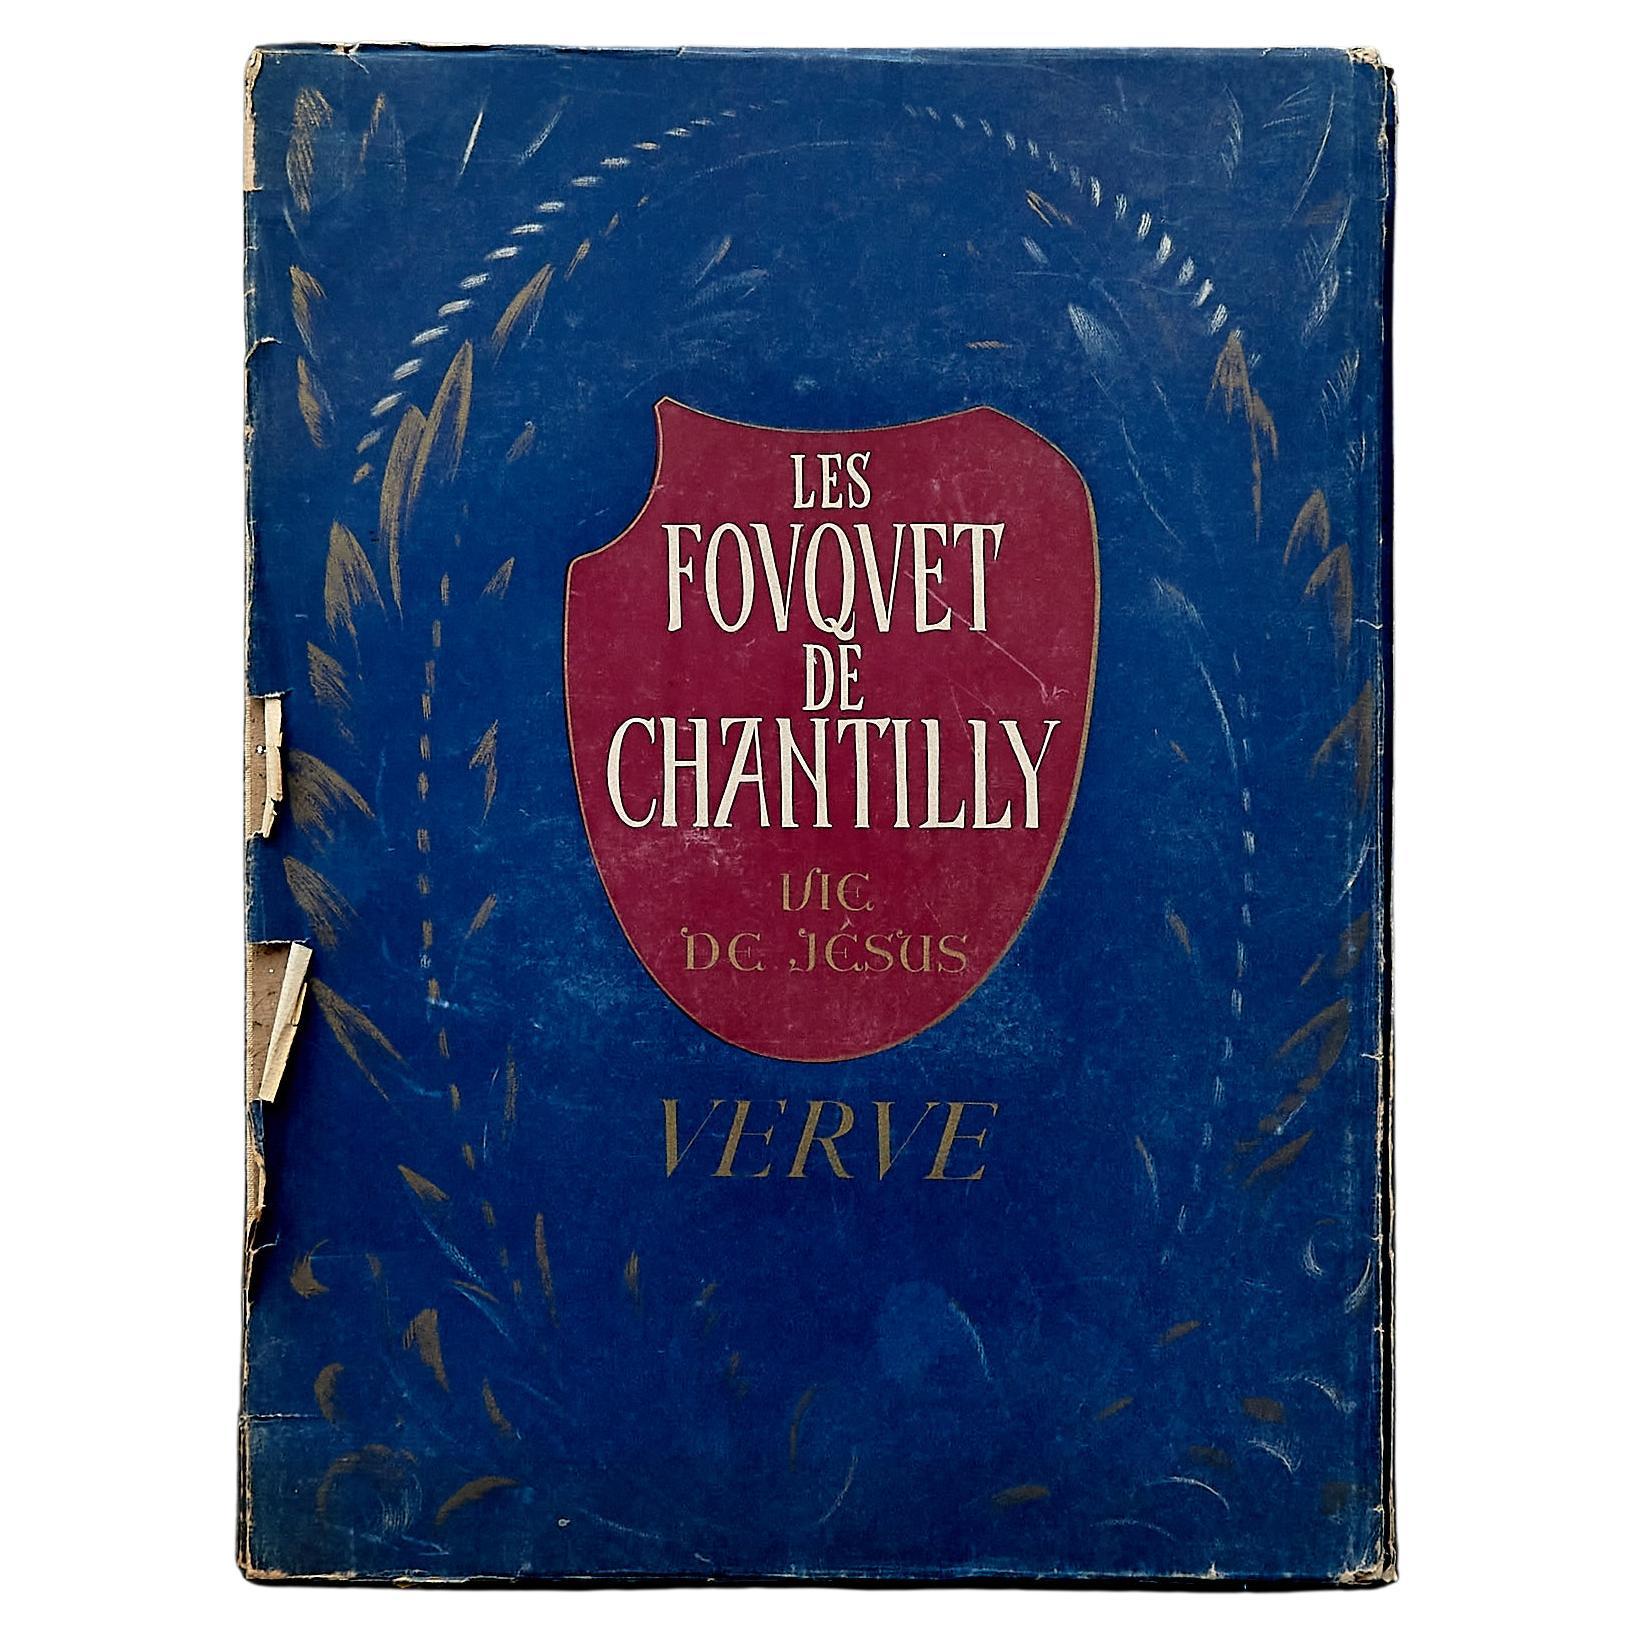 Première édition du livre « Les Fouquet de Chantilly », 1945